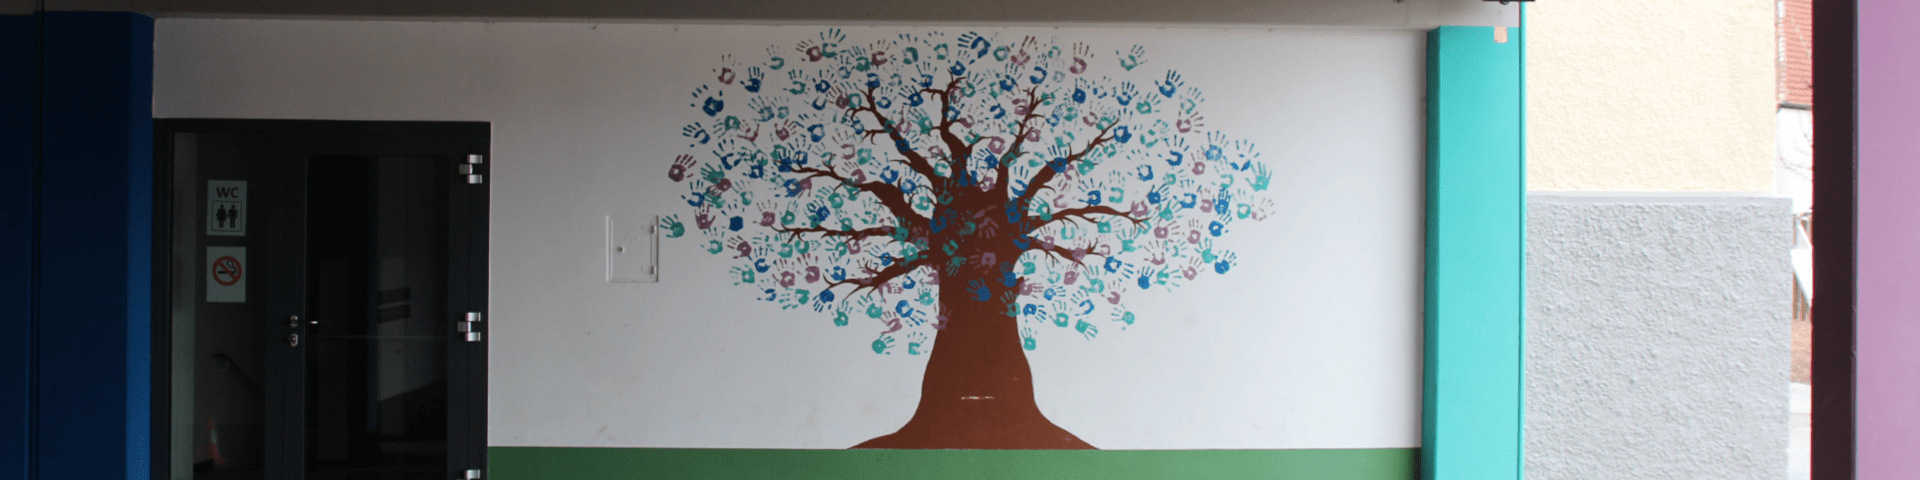 Wandmalerei: Baum mit vielen Handabdrücken als Blätter